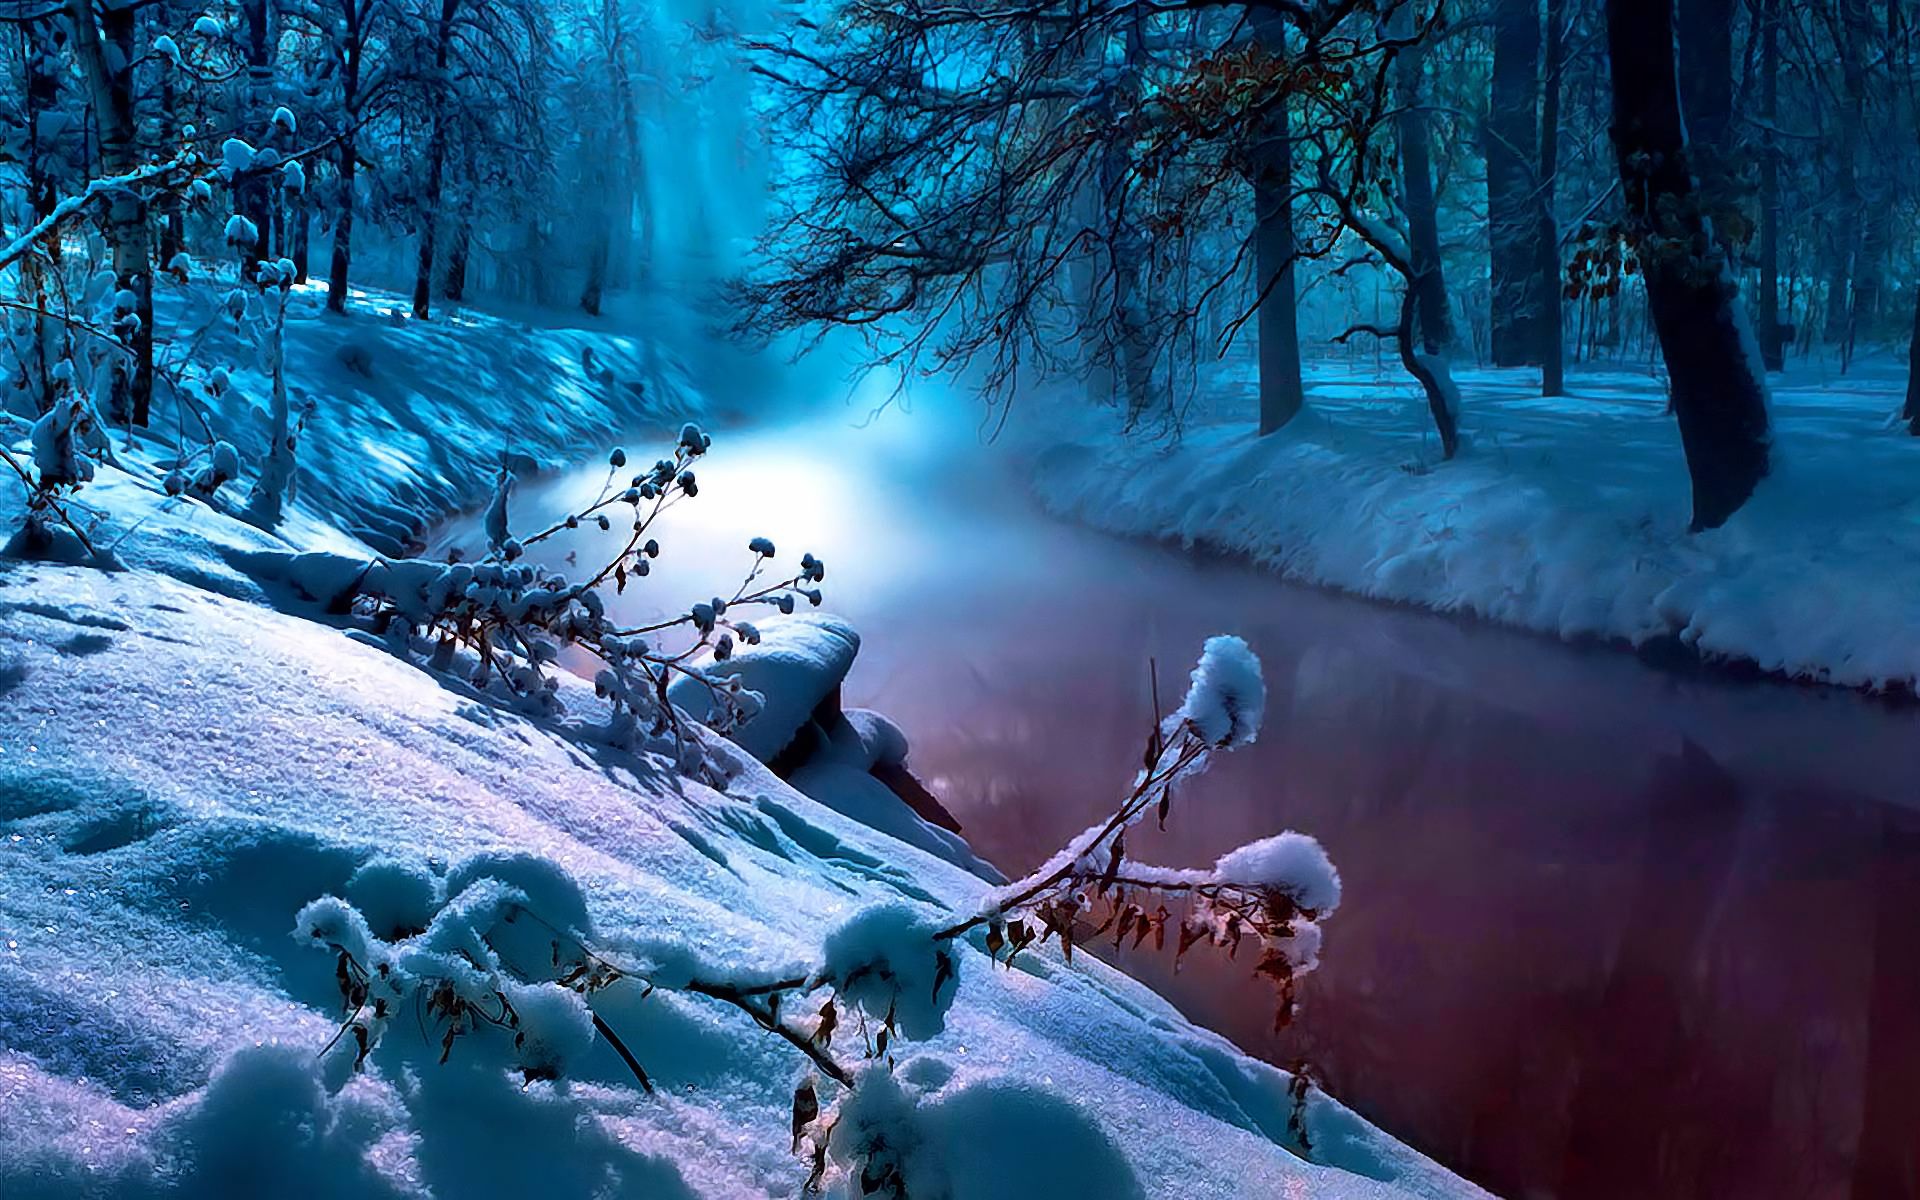 Скачать обои бесплатно Зима, Река, Снег, Дерево, Туман, Синий, Земля/природа картинка на рабочий стол ПК